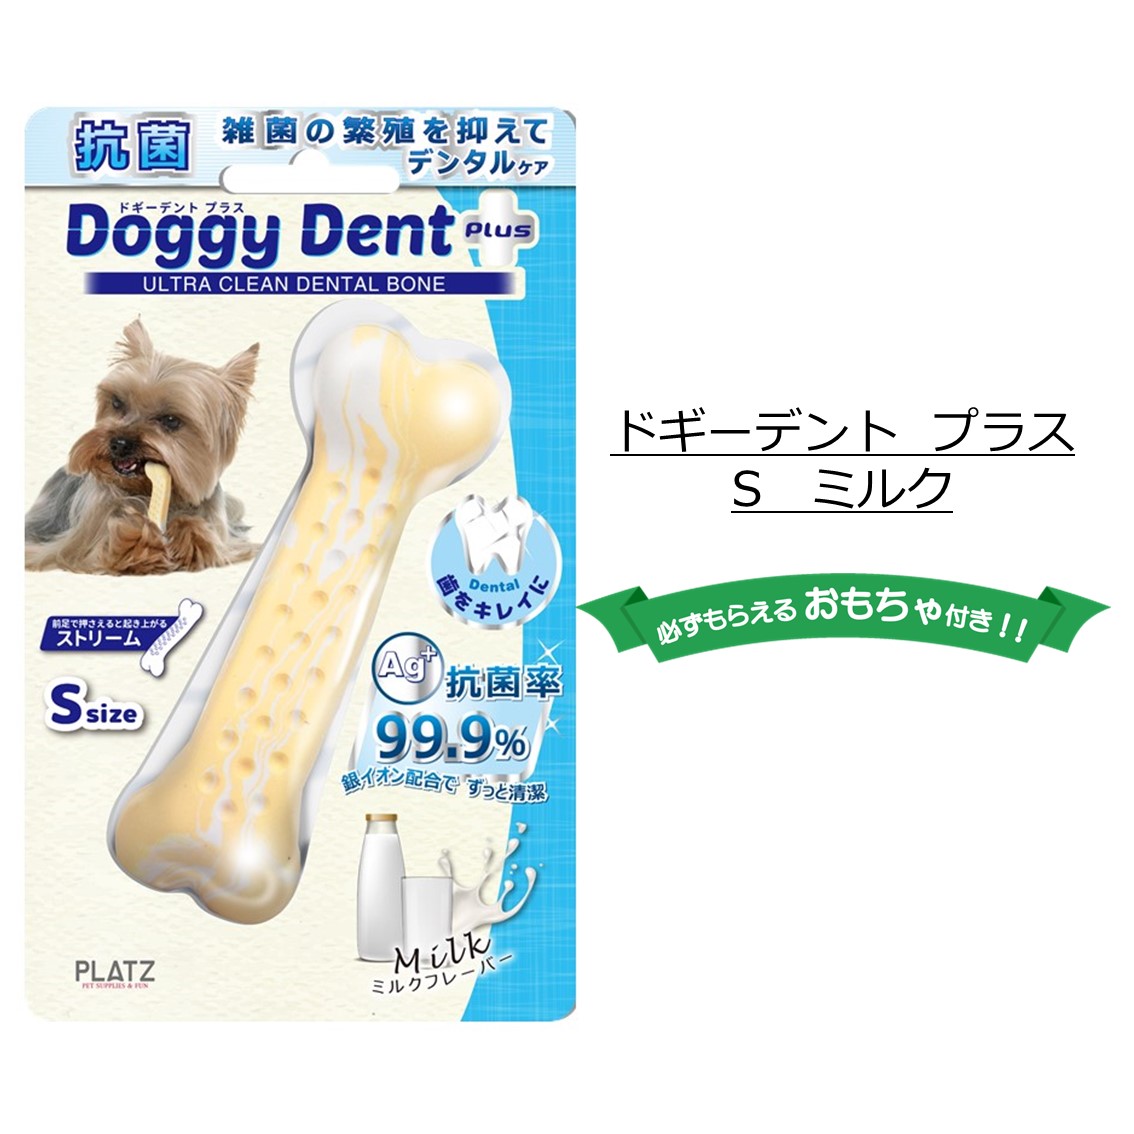 405円 人気が高い PLATZ PET SUPPLISESFUN プラッツ 犬用おもちゃ デンタルトーイドギーデント ベーコン S サイズ